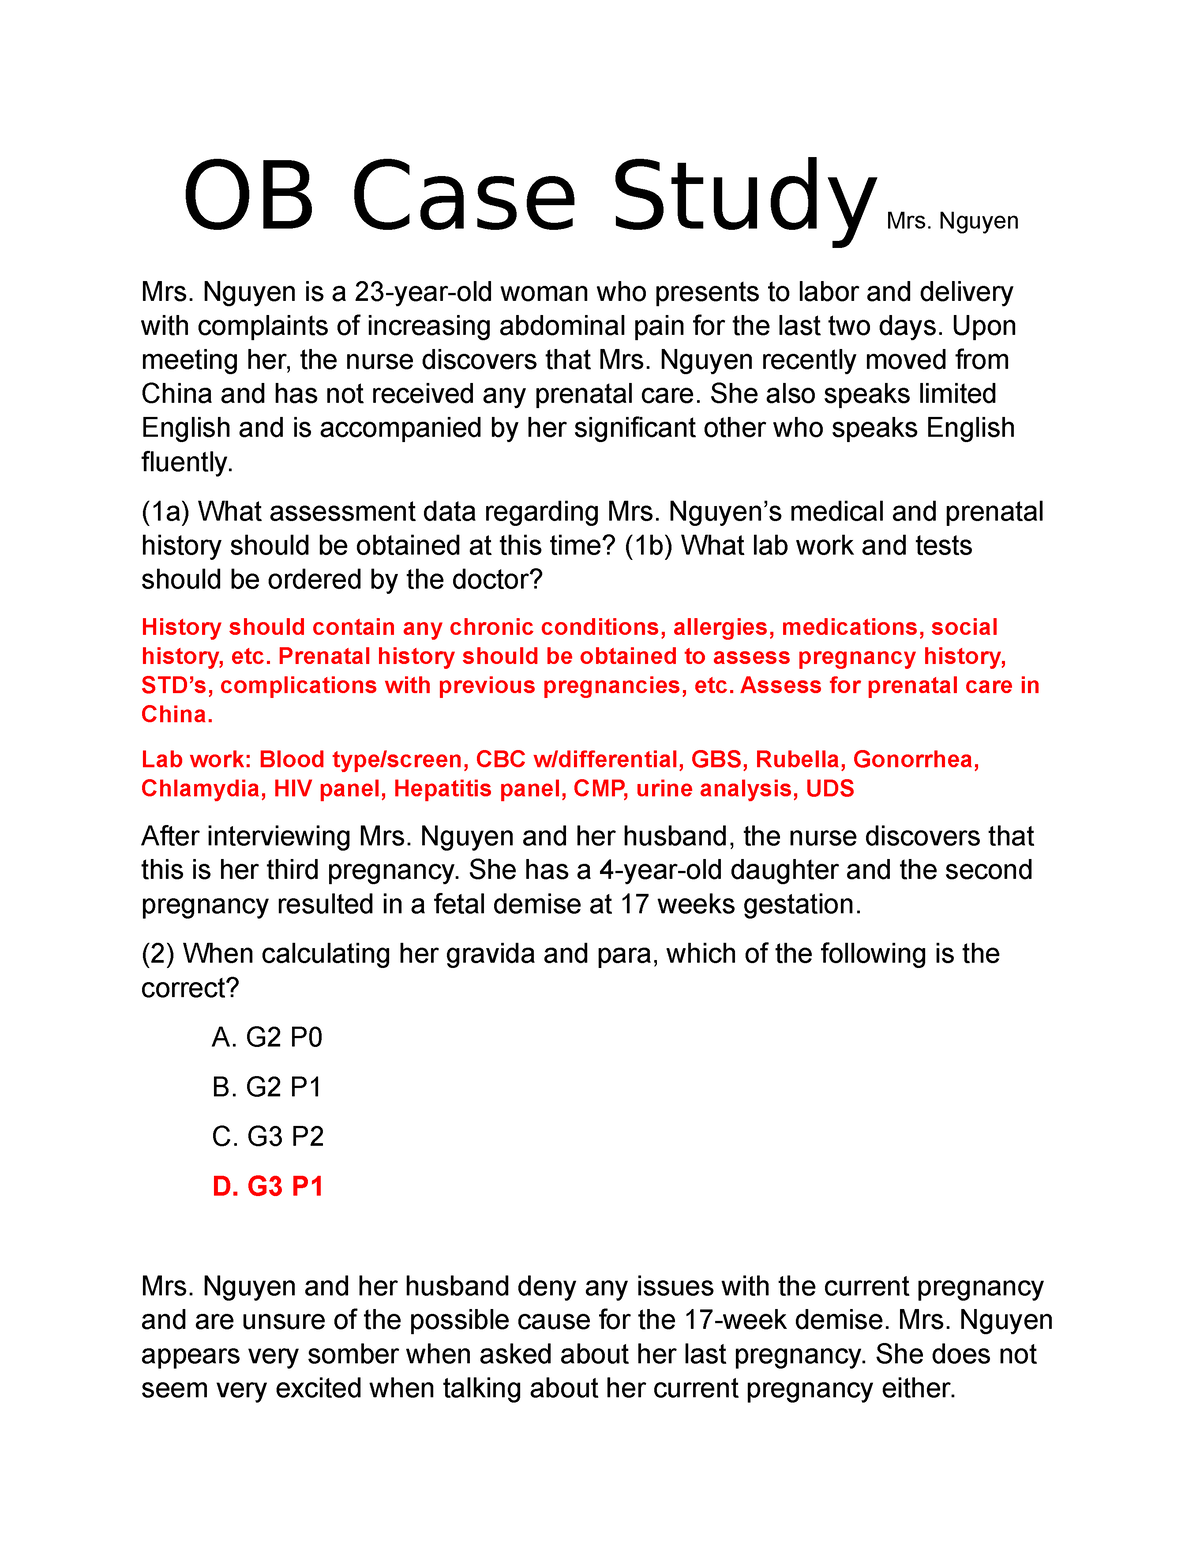 obg case study format slideshare